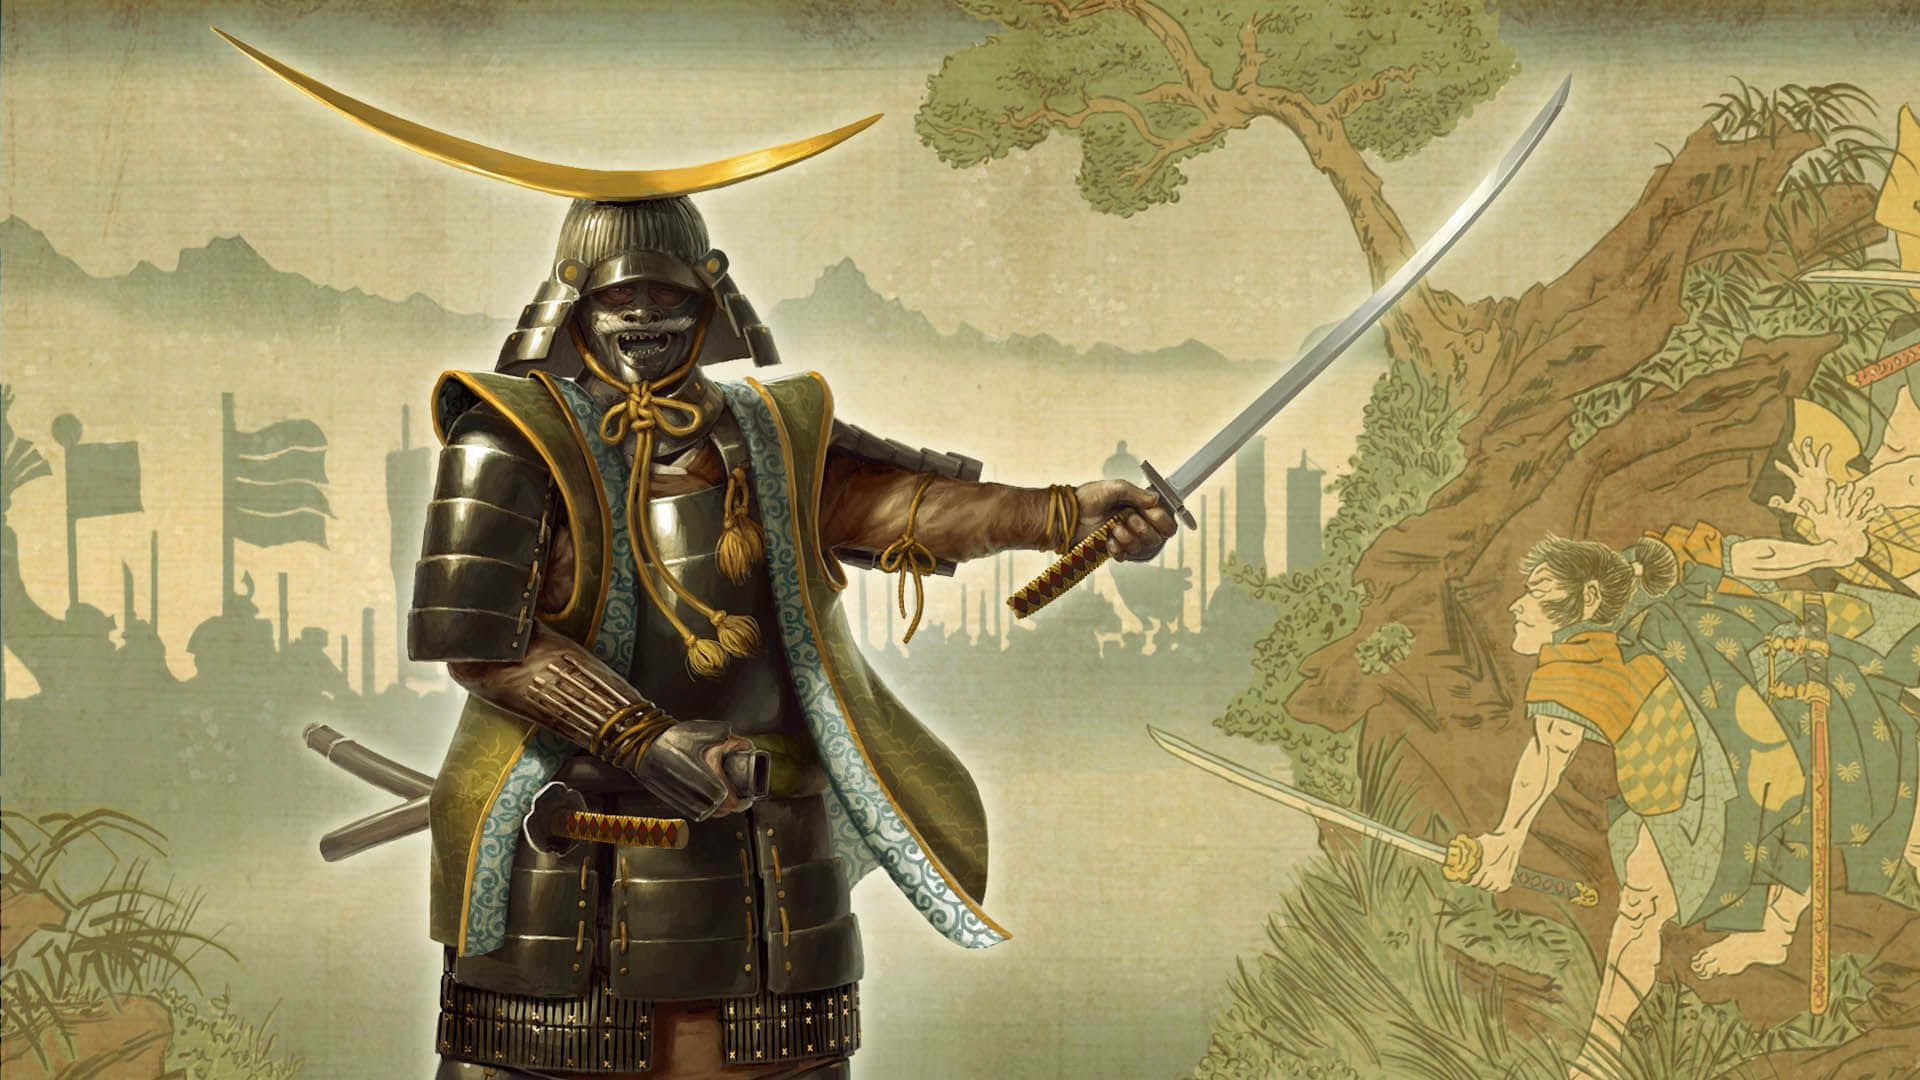 Antikshirasaya Och Fruktansvärd Samurajrustning Kombineras För Att Skapa En Realistisk Landskap I Spelet Total War Shogun 2.